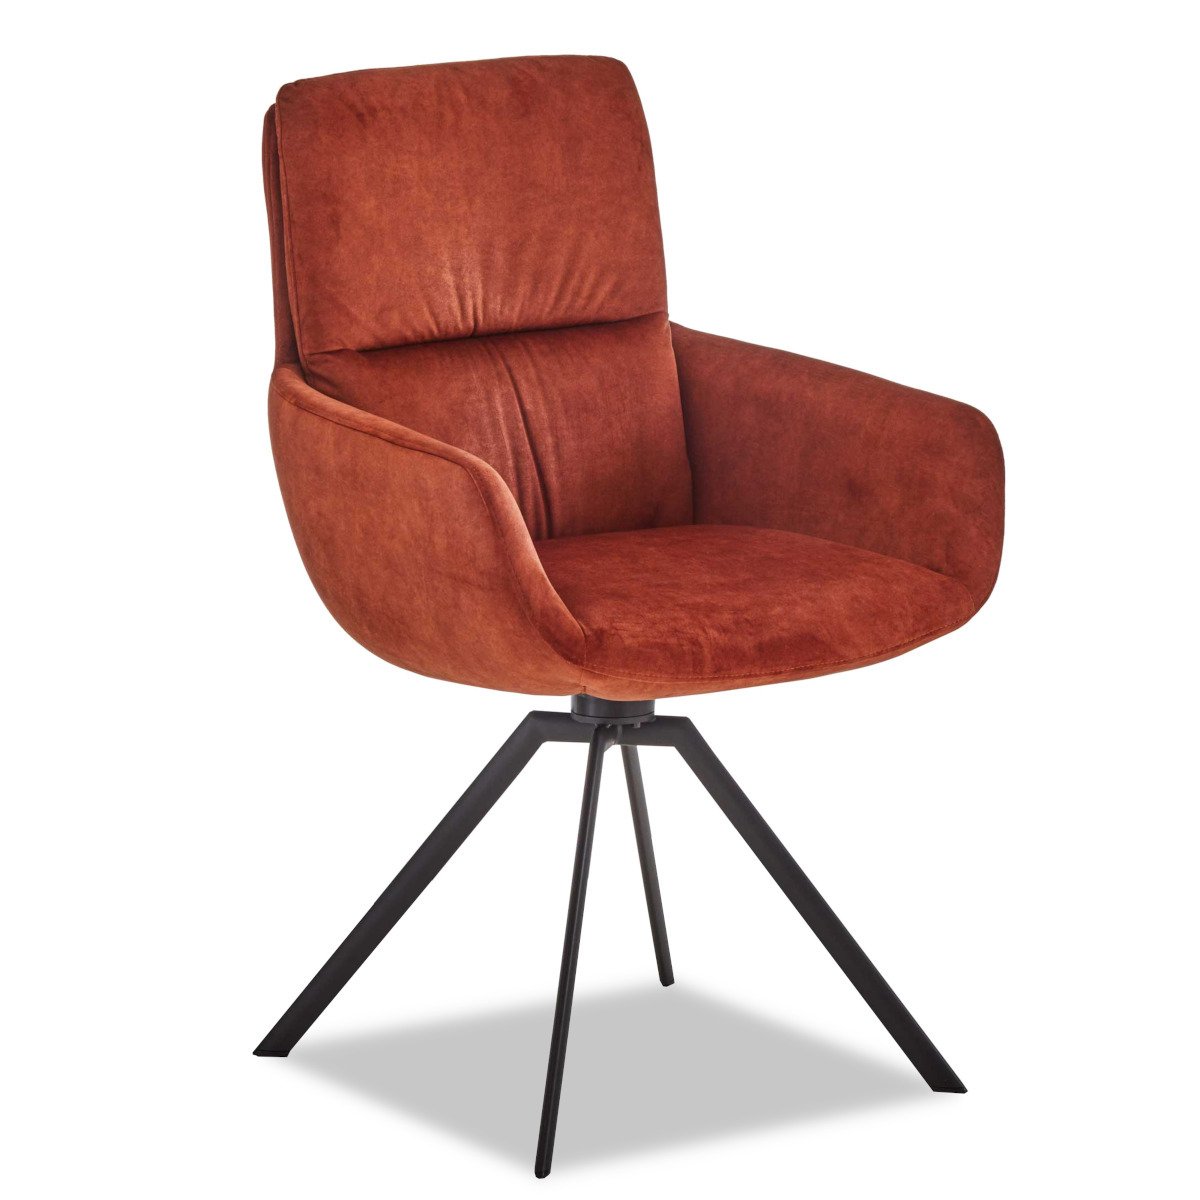 Rot-braune Stuhl mit dunkele Metalbeine